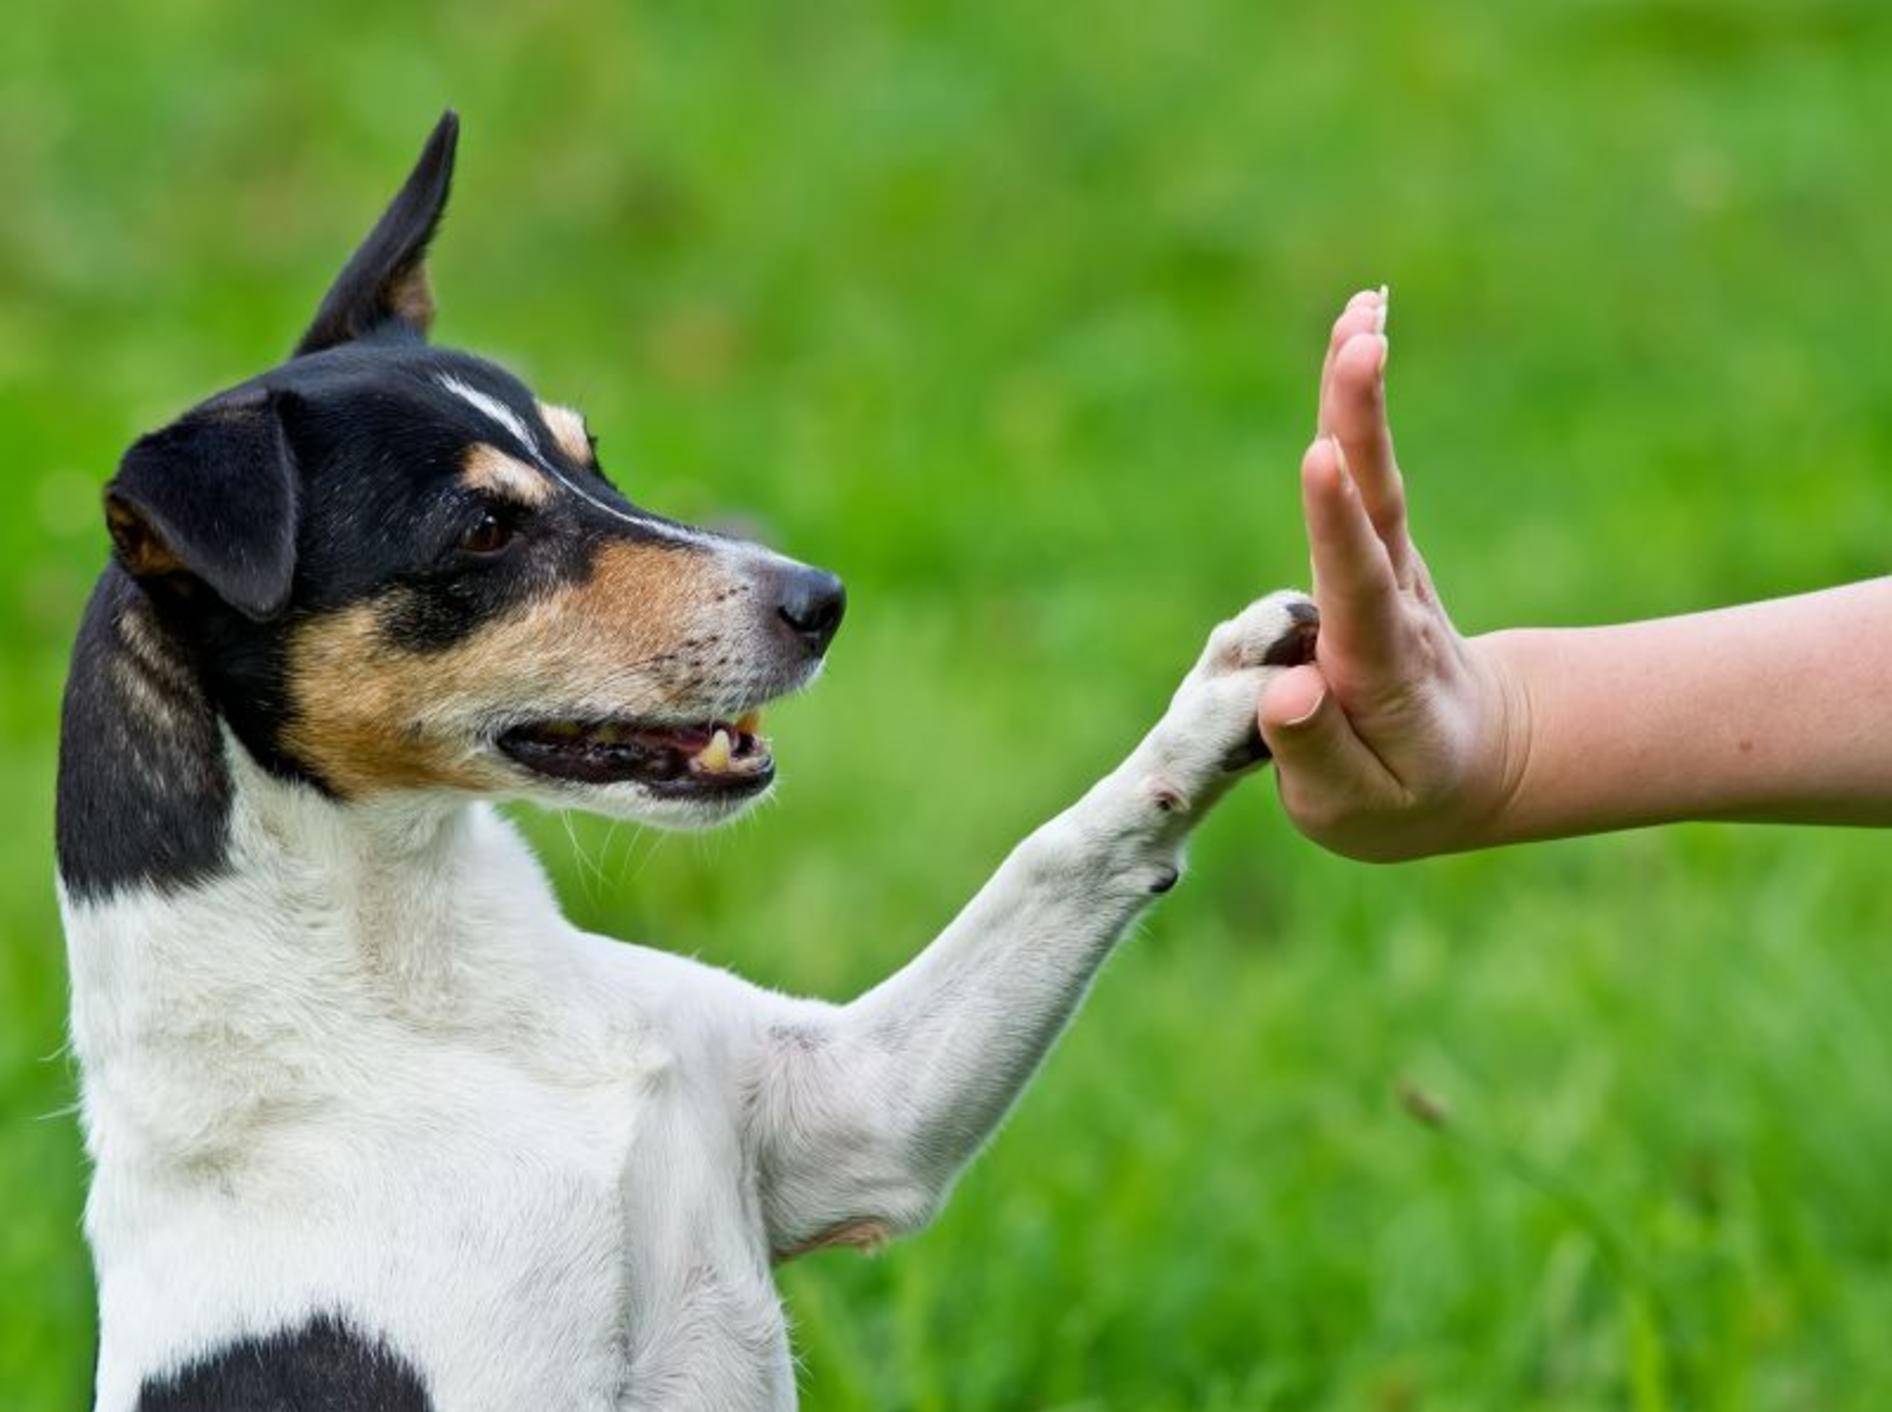 "Schlag ein!" Gutes Hundetraining führt zu einer vertrauensvollen Beziehung zwischen Vierbeiner und Herrchen — Bild: Shutterstock / dwphotos